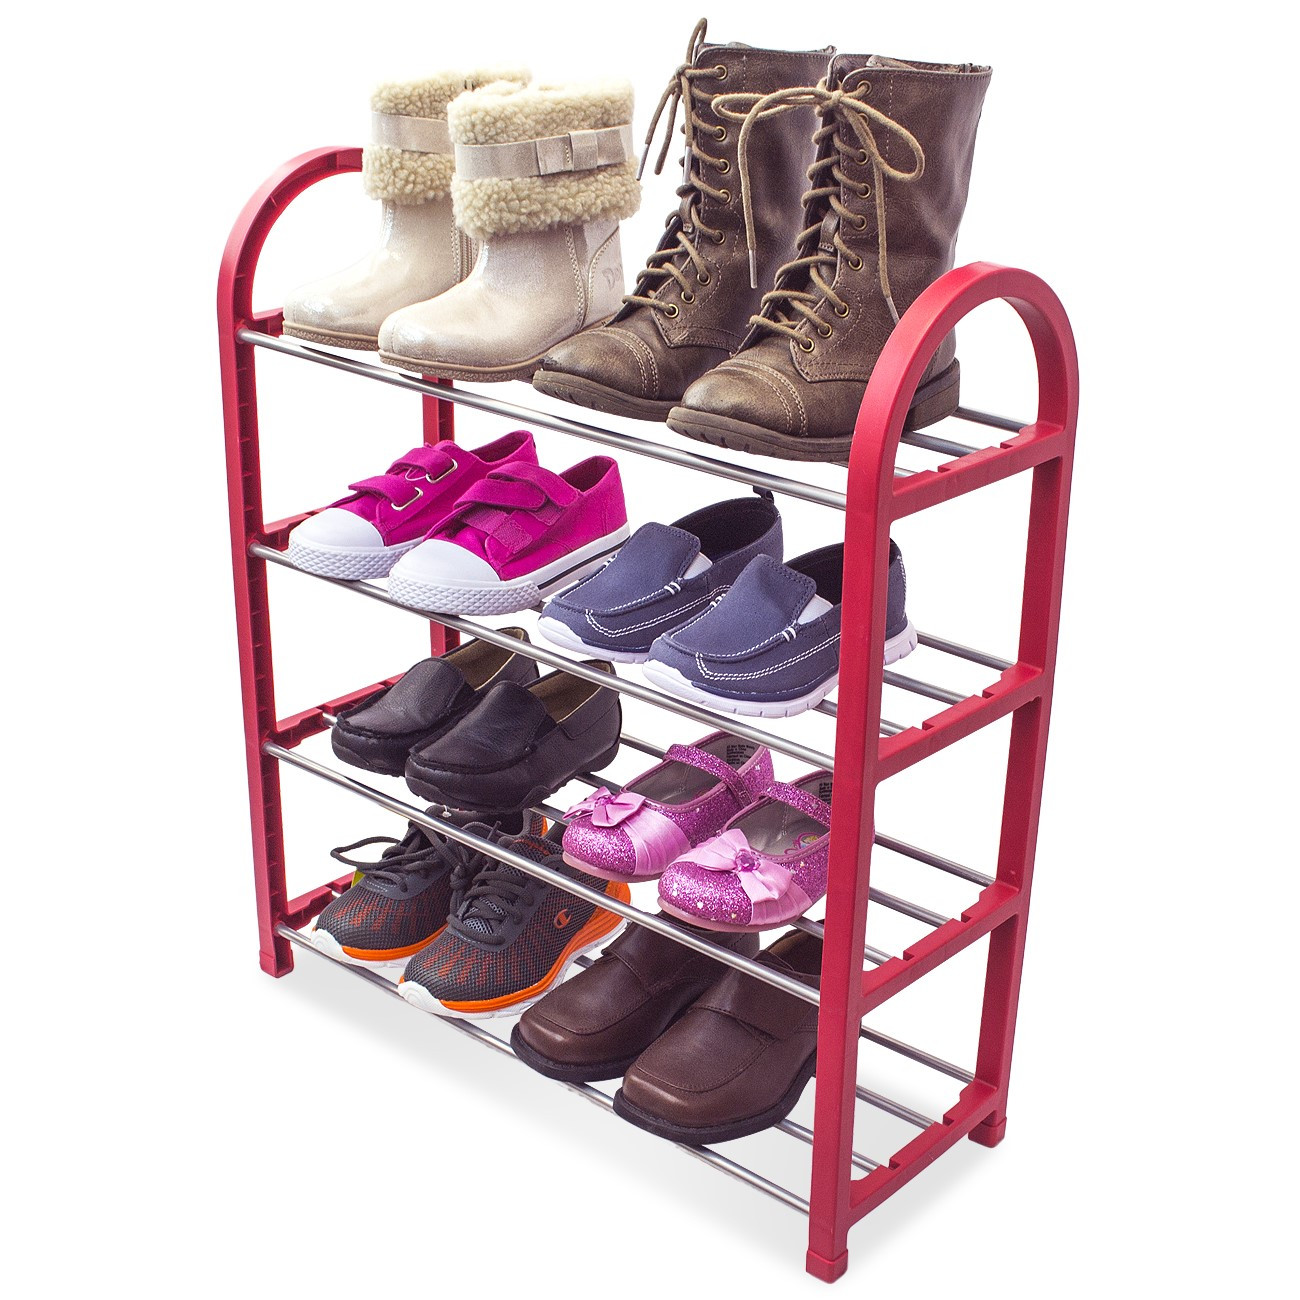 Children Shoe Storage
 Sorbus Kid s Shoe Rack Junior Organizer Storage 4 Levels